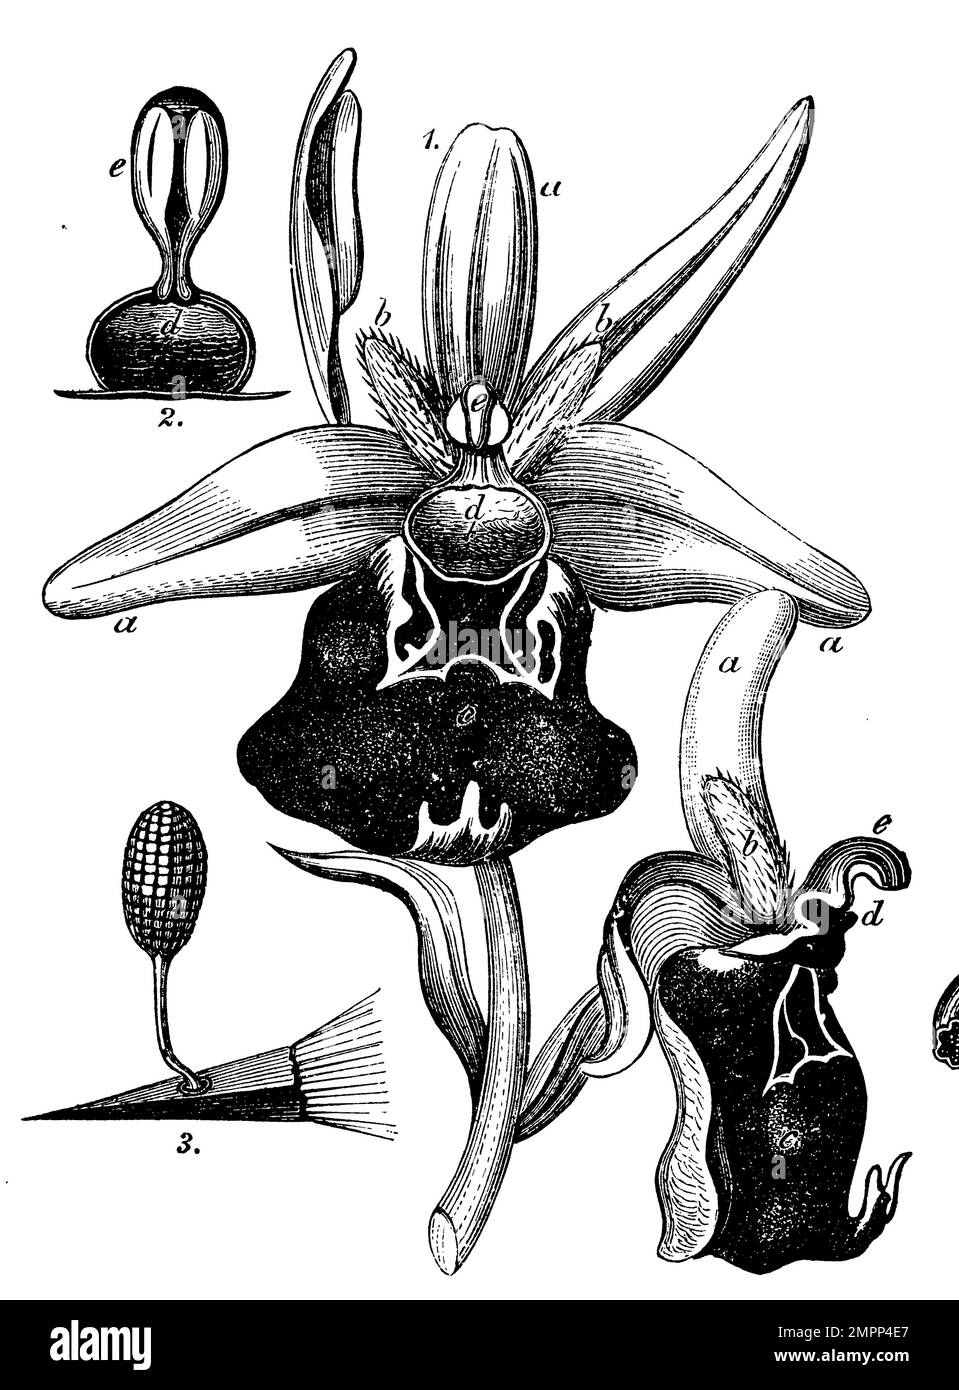 Ophrys sphégodes, deux fleurs, vu de l'avant et du côté, aaa les trois feuilles périgonales extérieures (calice), bbc les trois corolles internes, c lèvre, d stigmate, e stylar colonne, 2 étamen e avec deux masses polliniques, vu de l'avant, d stigmate, 8 pointe de crayon avec une masse de pollen adhérant à elle., Ophrys sphègodes, (livre botanique, 1898), Große Spinnen-Ragwurz, Zwei Blüten, von vorn und von der Seite betrachtet, aaa die drei äußeren Perigonblätter (Kelch), bbc die drei innen Kronen, c Lippe, d Narbe, e Griffelsäule, 2 Staubgefäß e mit zwei Pollenmassen, von Blevortbeen, 8 Banque D'Images